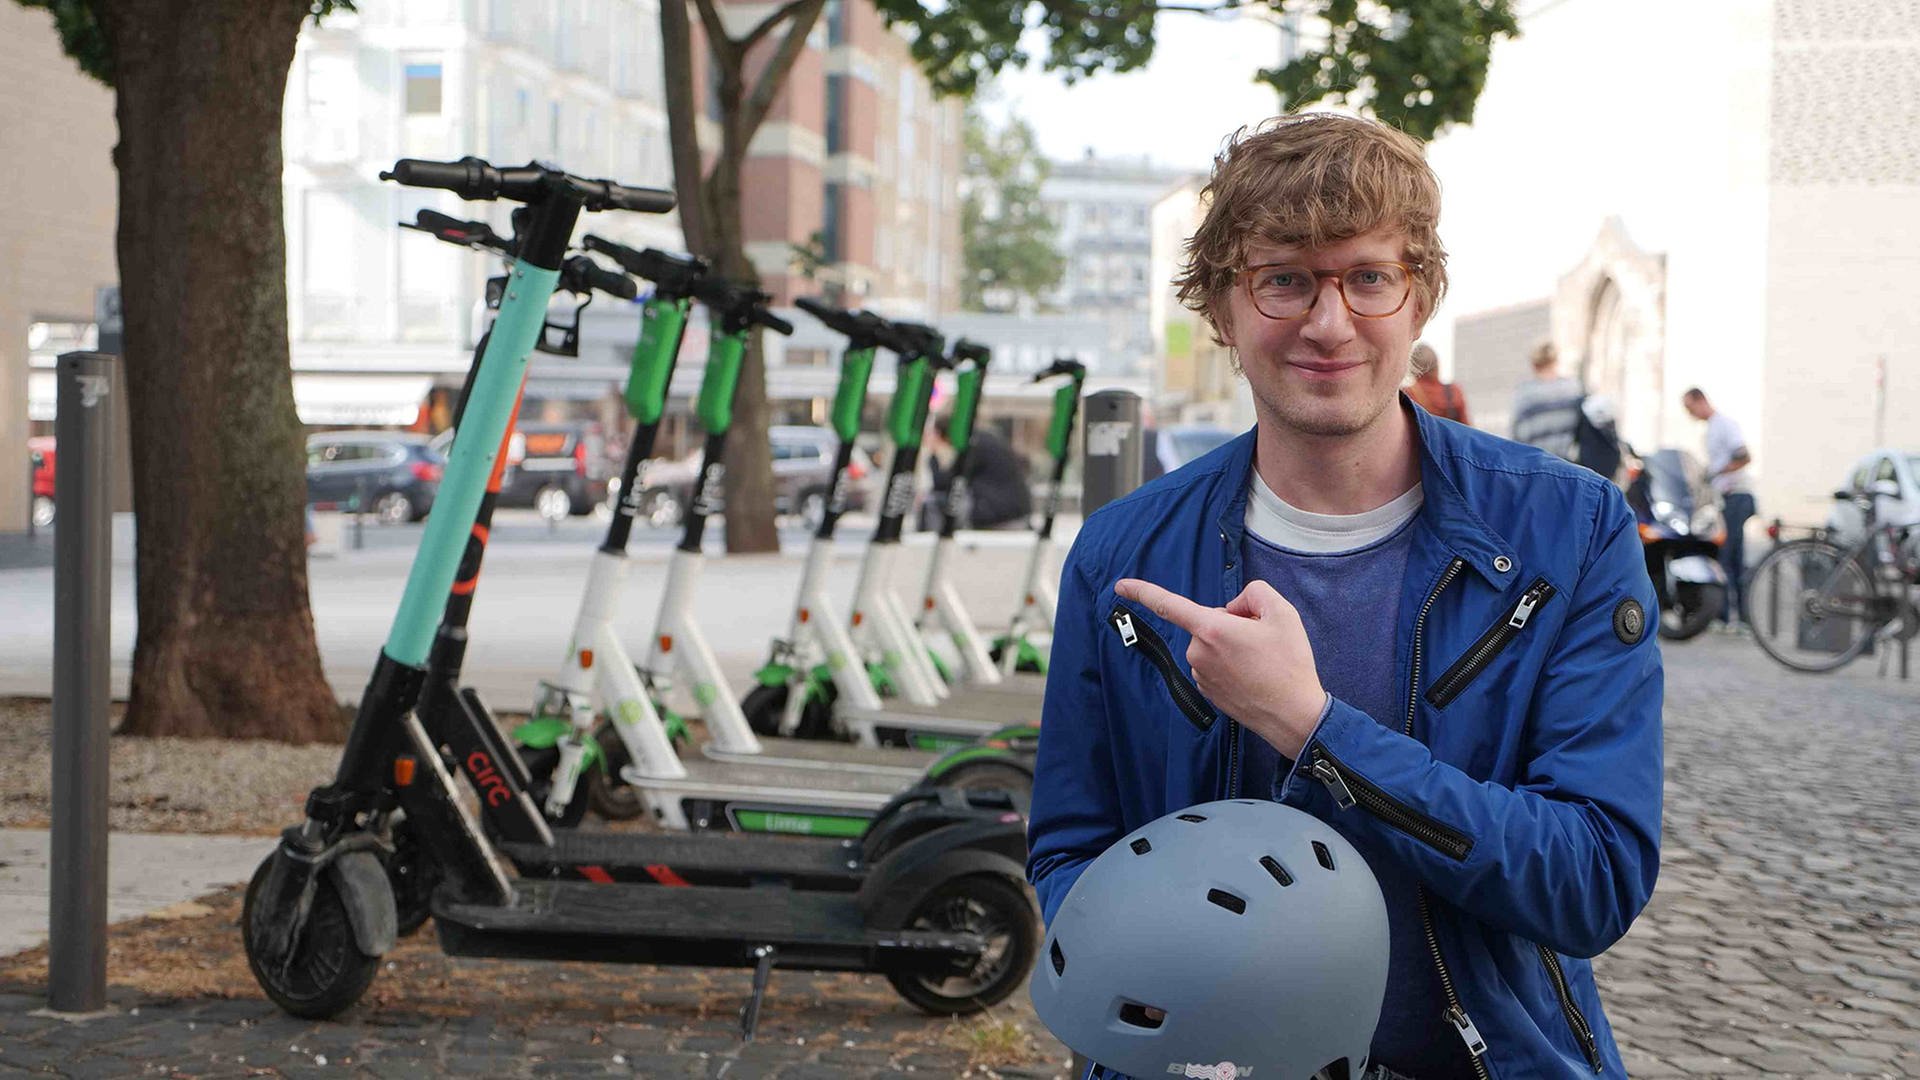 neuneinhalb-Reporter Robert steht in einer Fußgängerzone und trägt einen Fahrradhelm in der Hand. Mit der anderen zeigt er auf eine Reihe Elektro-Roller, die hinter ihm stehen.